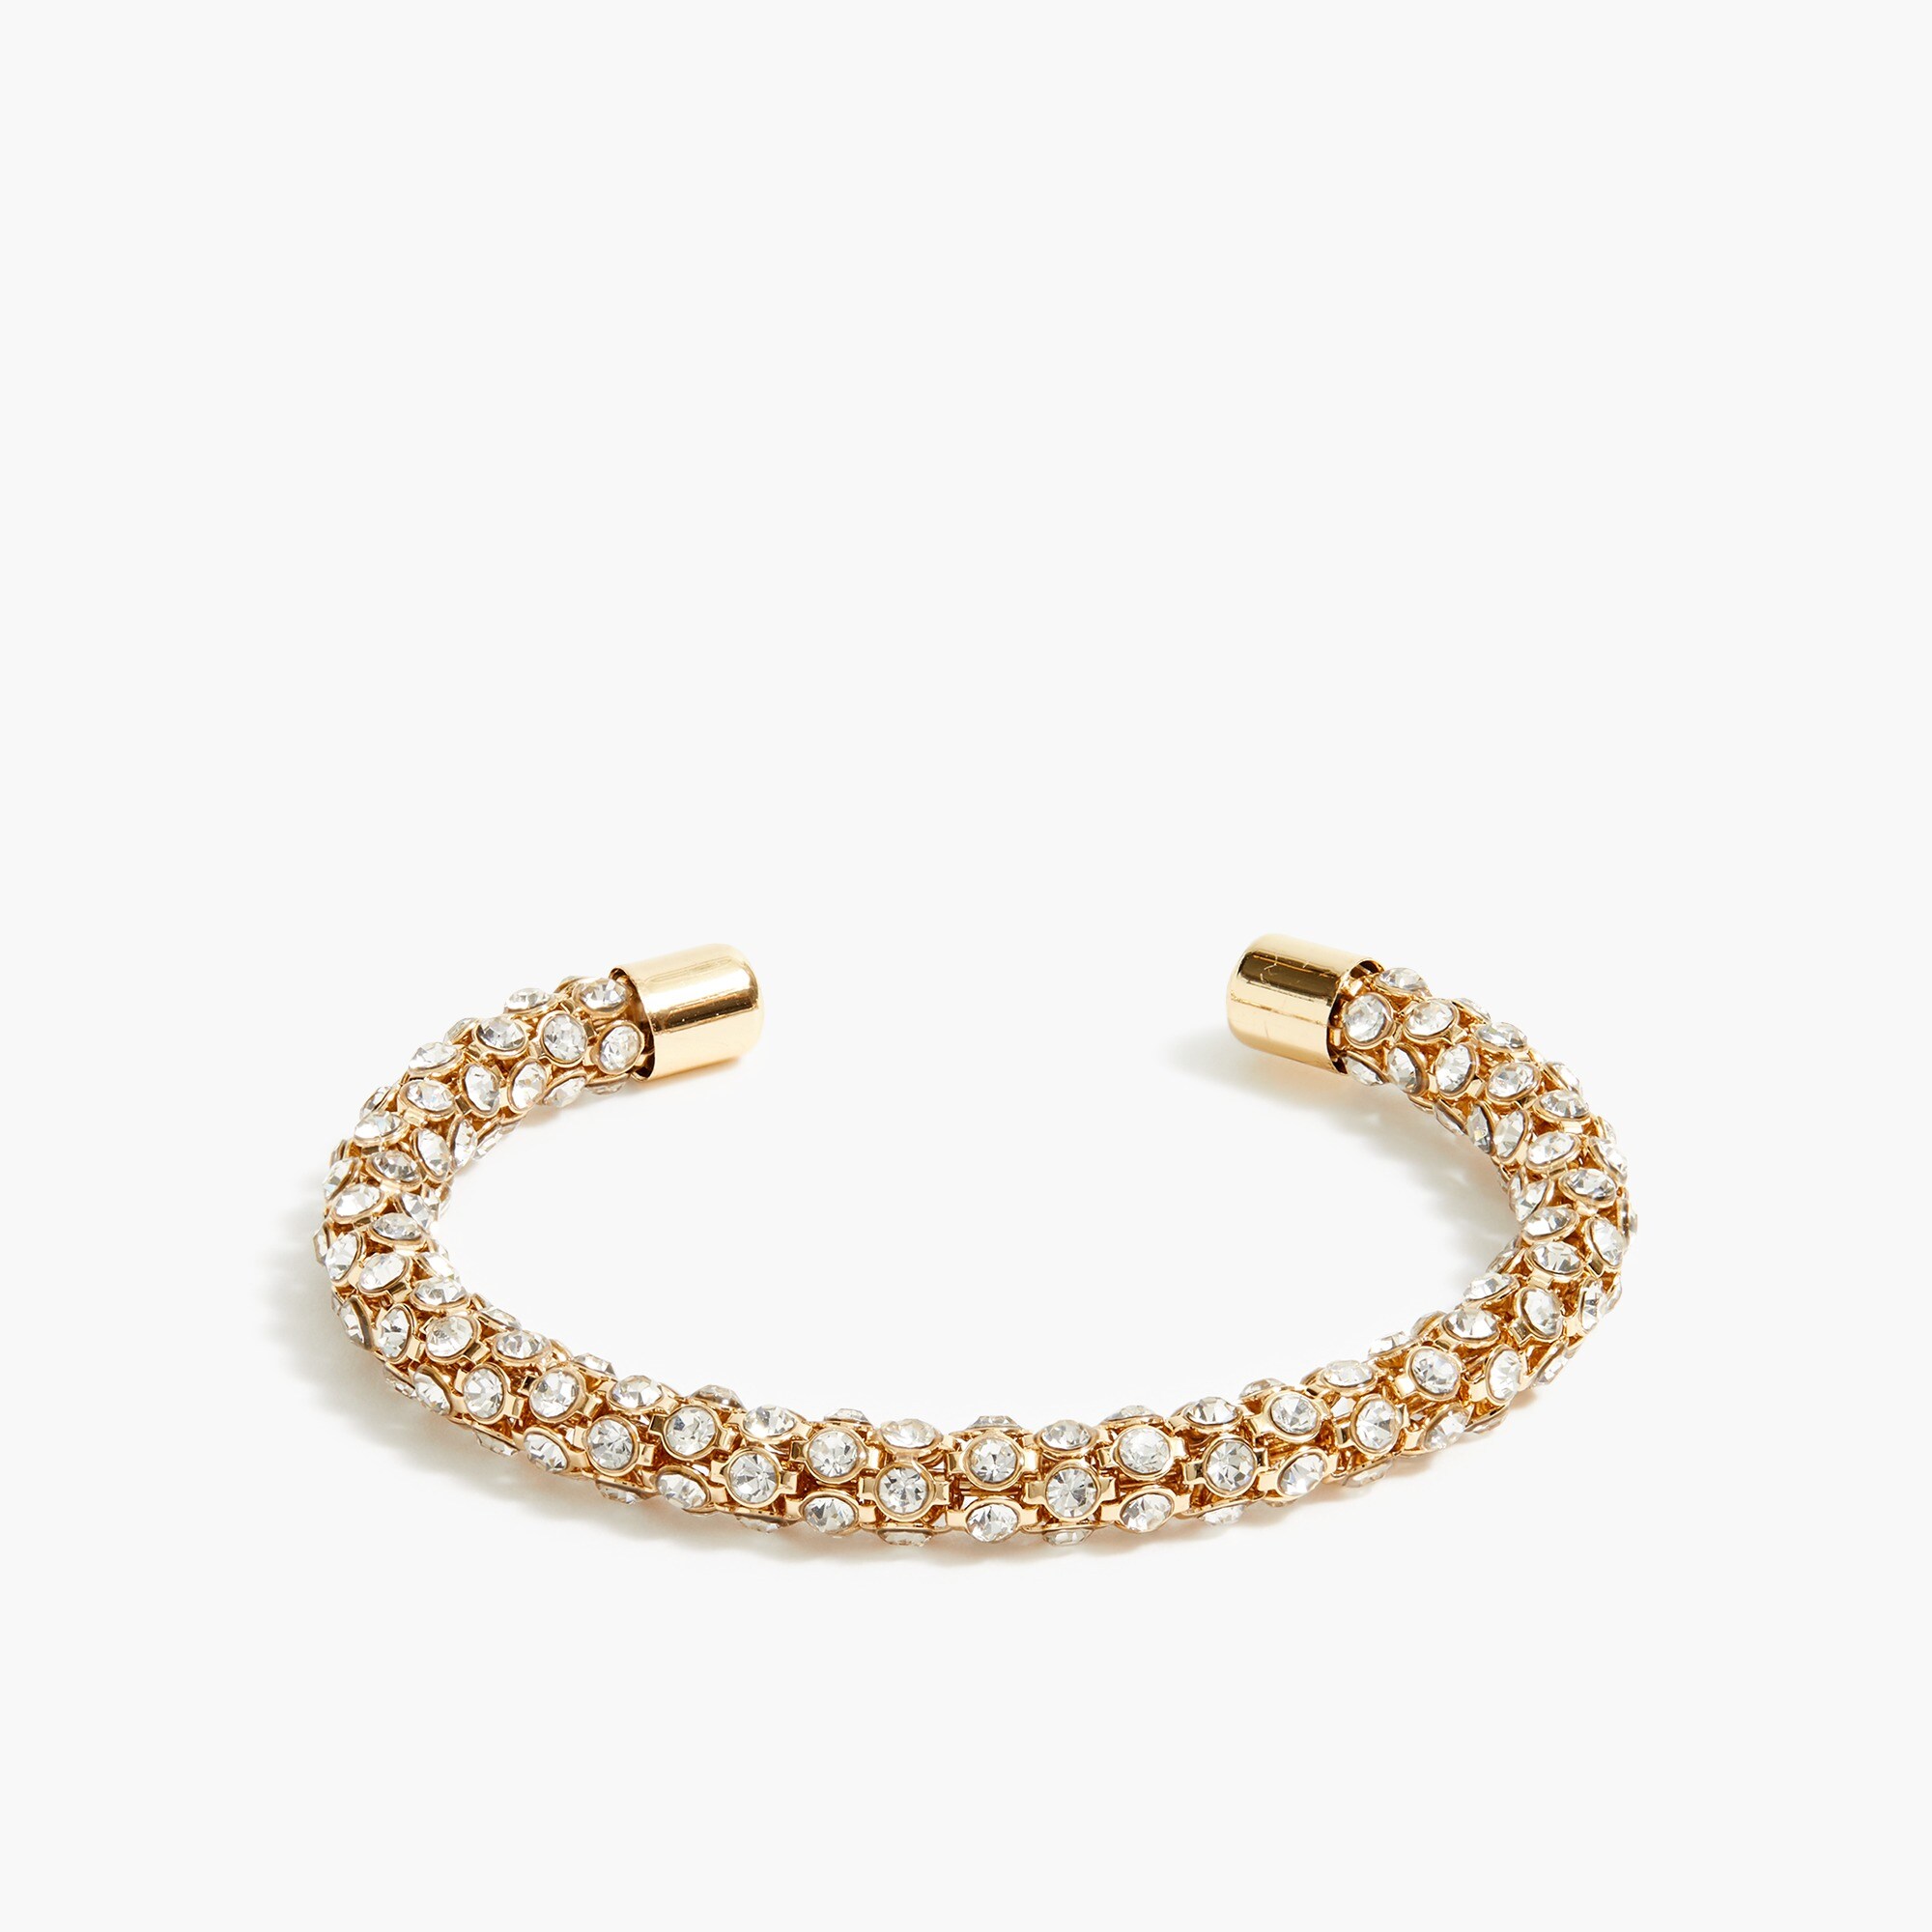  Pav&eacute; crystal cuff bracelet